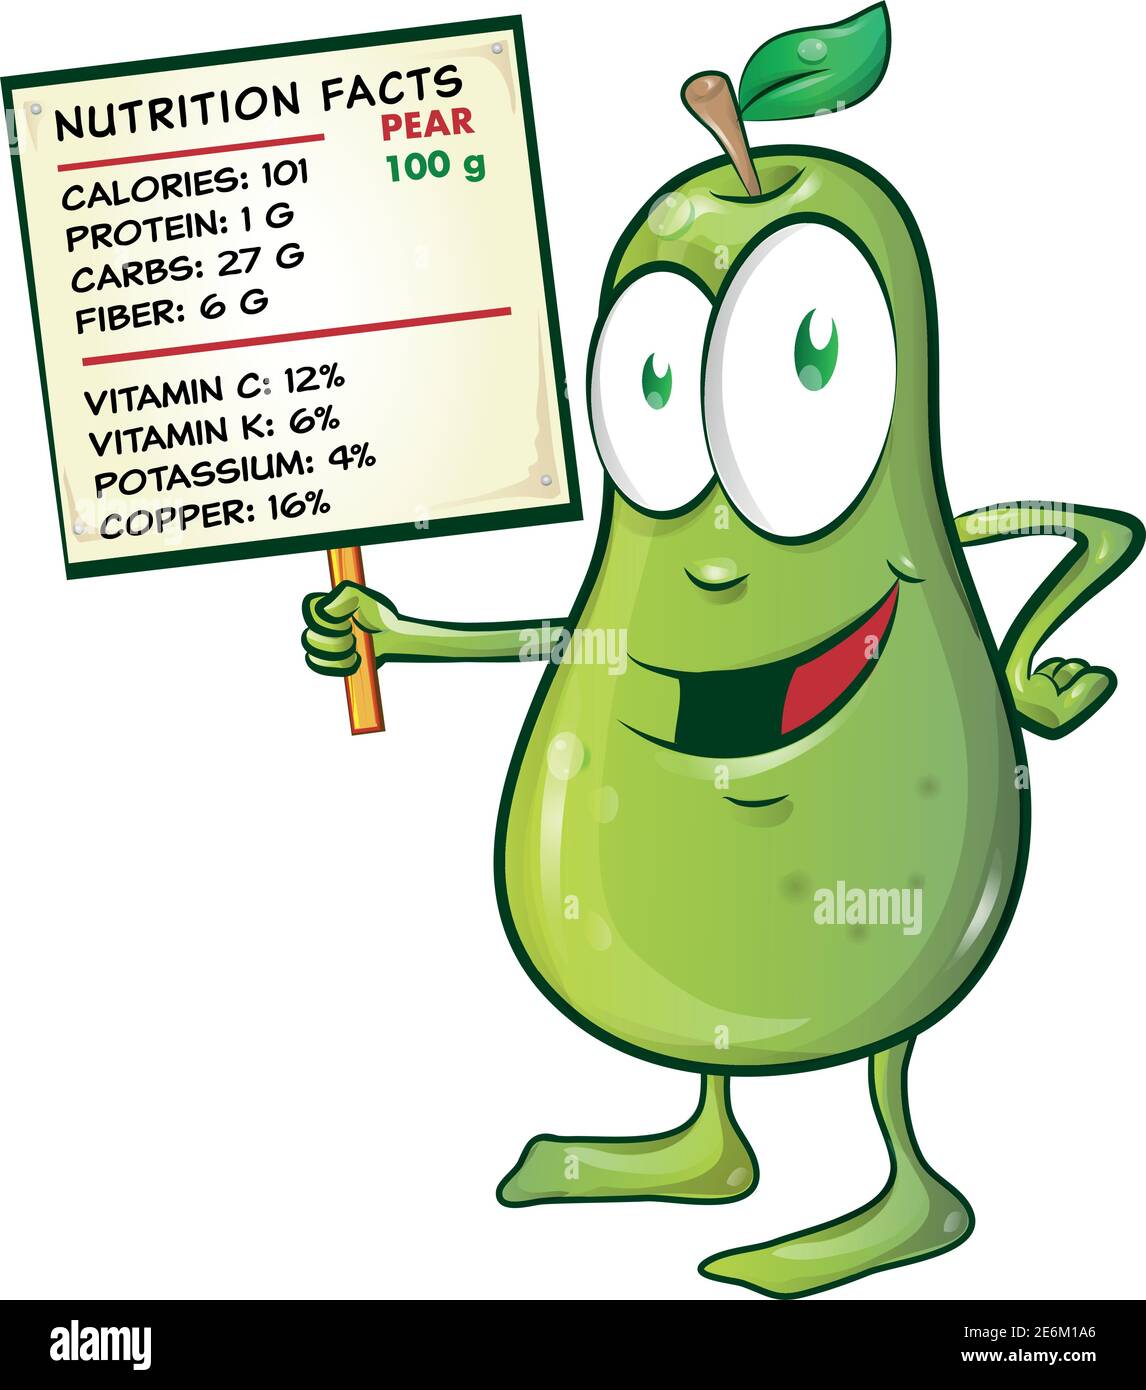 dessin animé de poire avec des faits nutritionnels sur panneau Illustration de Vecteur